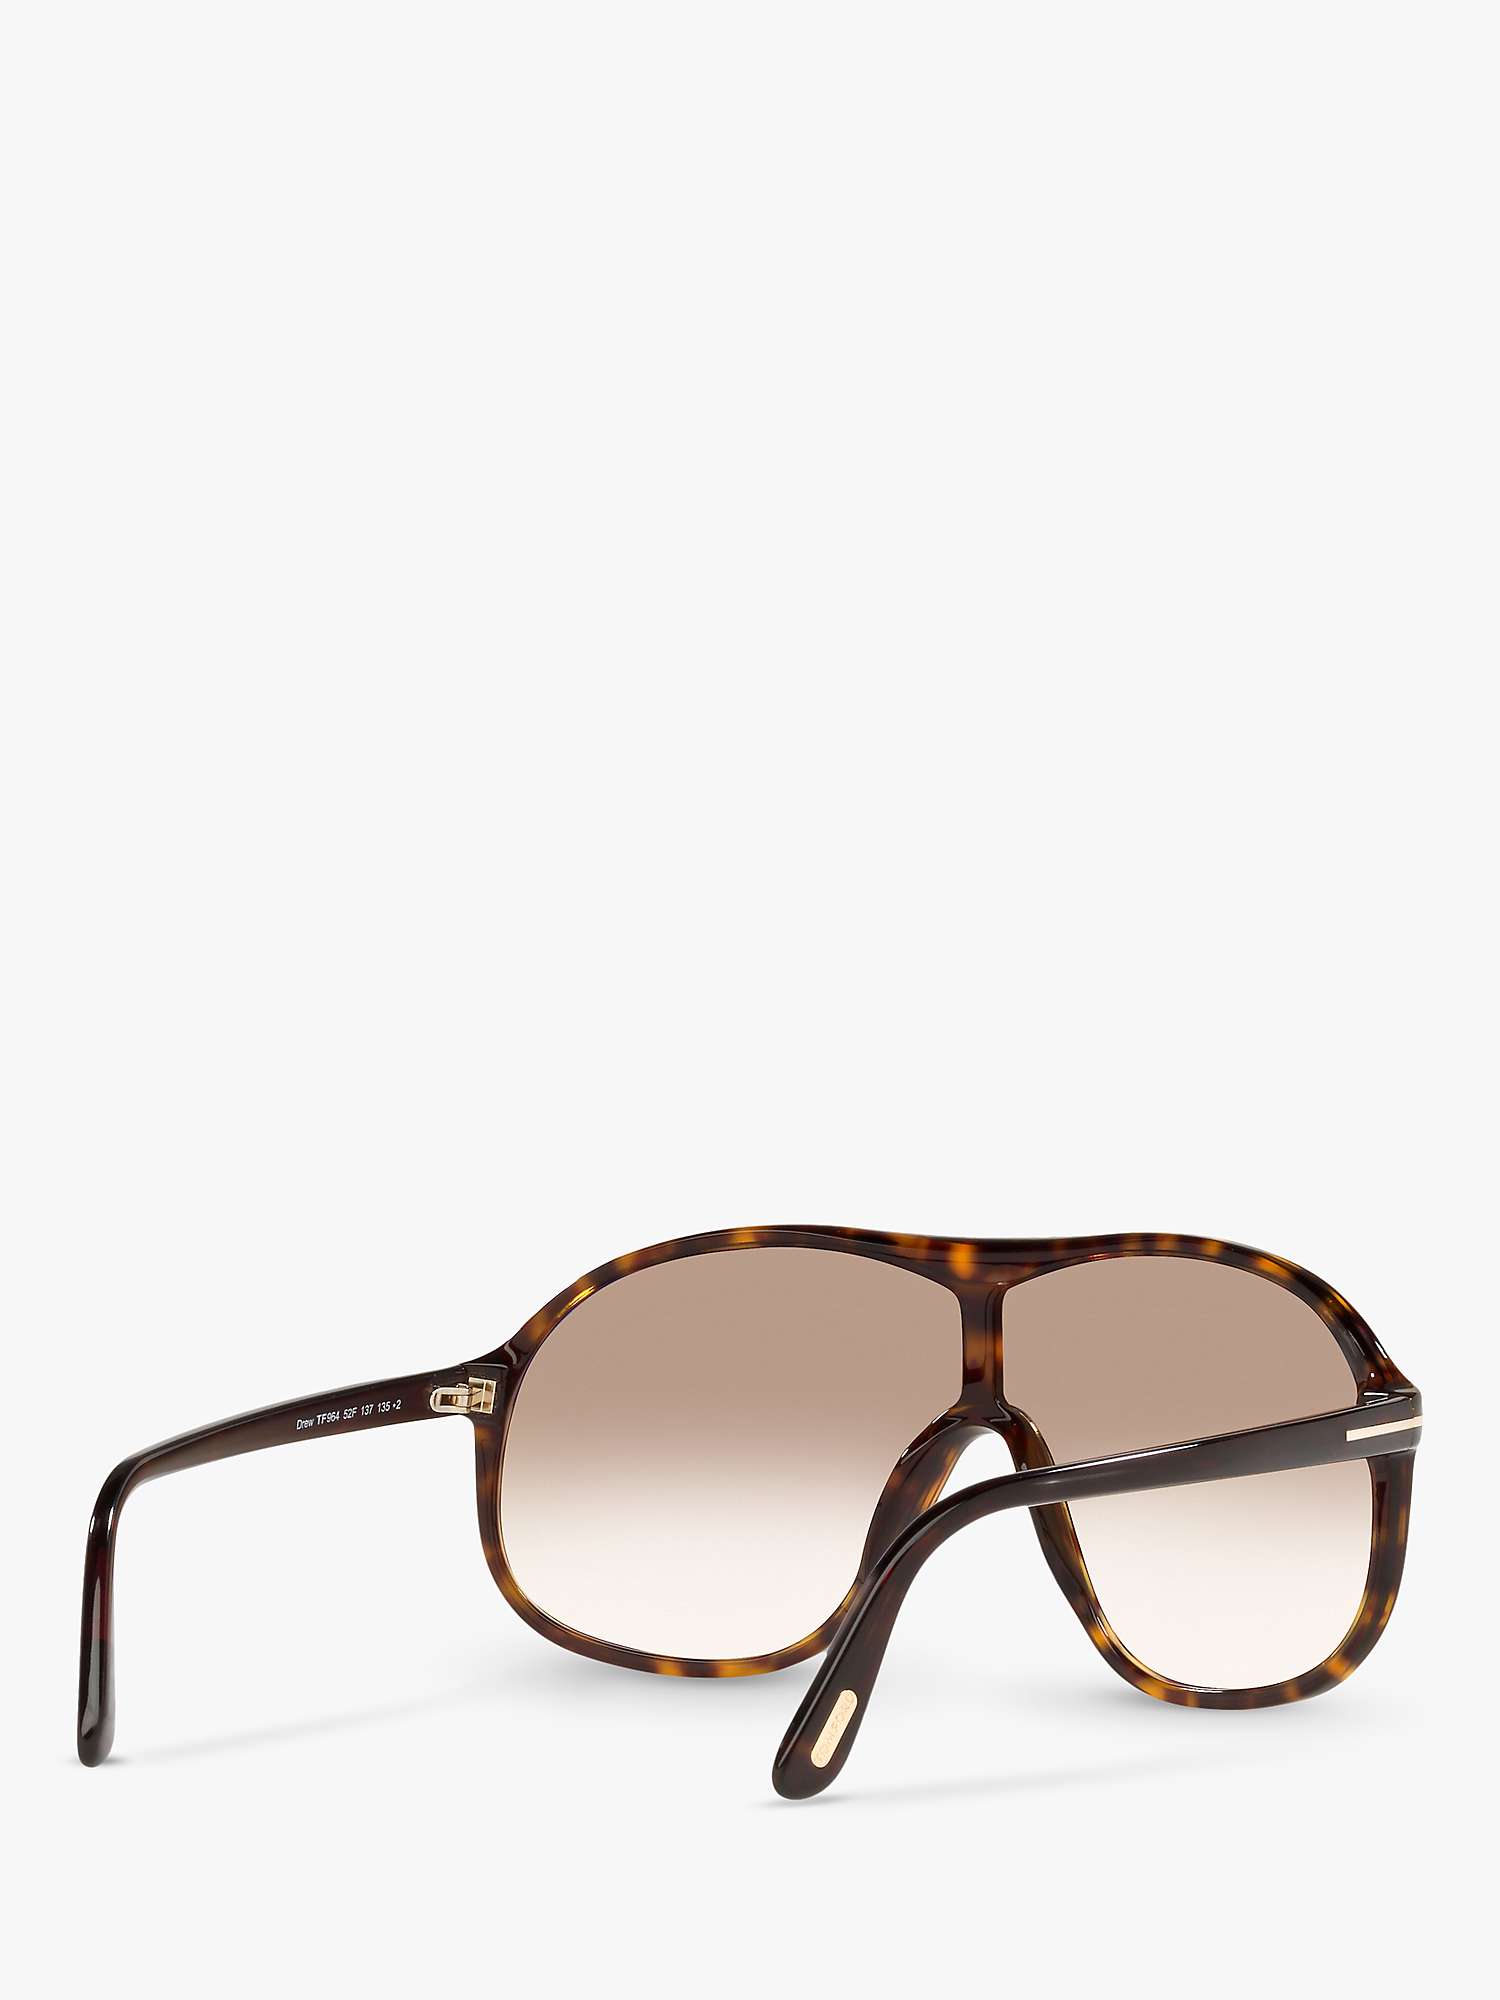 Buy TOM FORD FT0964 Men's Drew Aviator Sunglasses Online at johnlewis.com